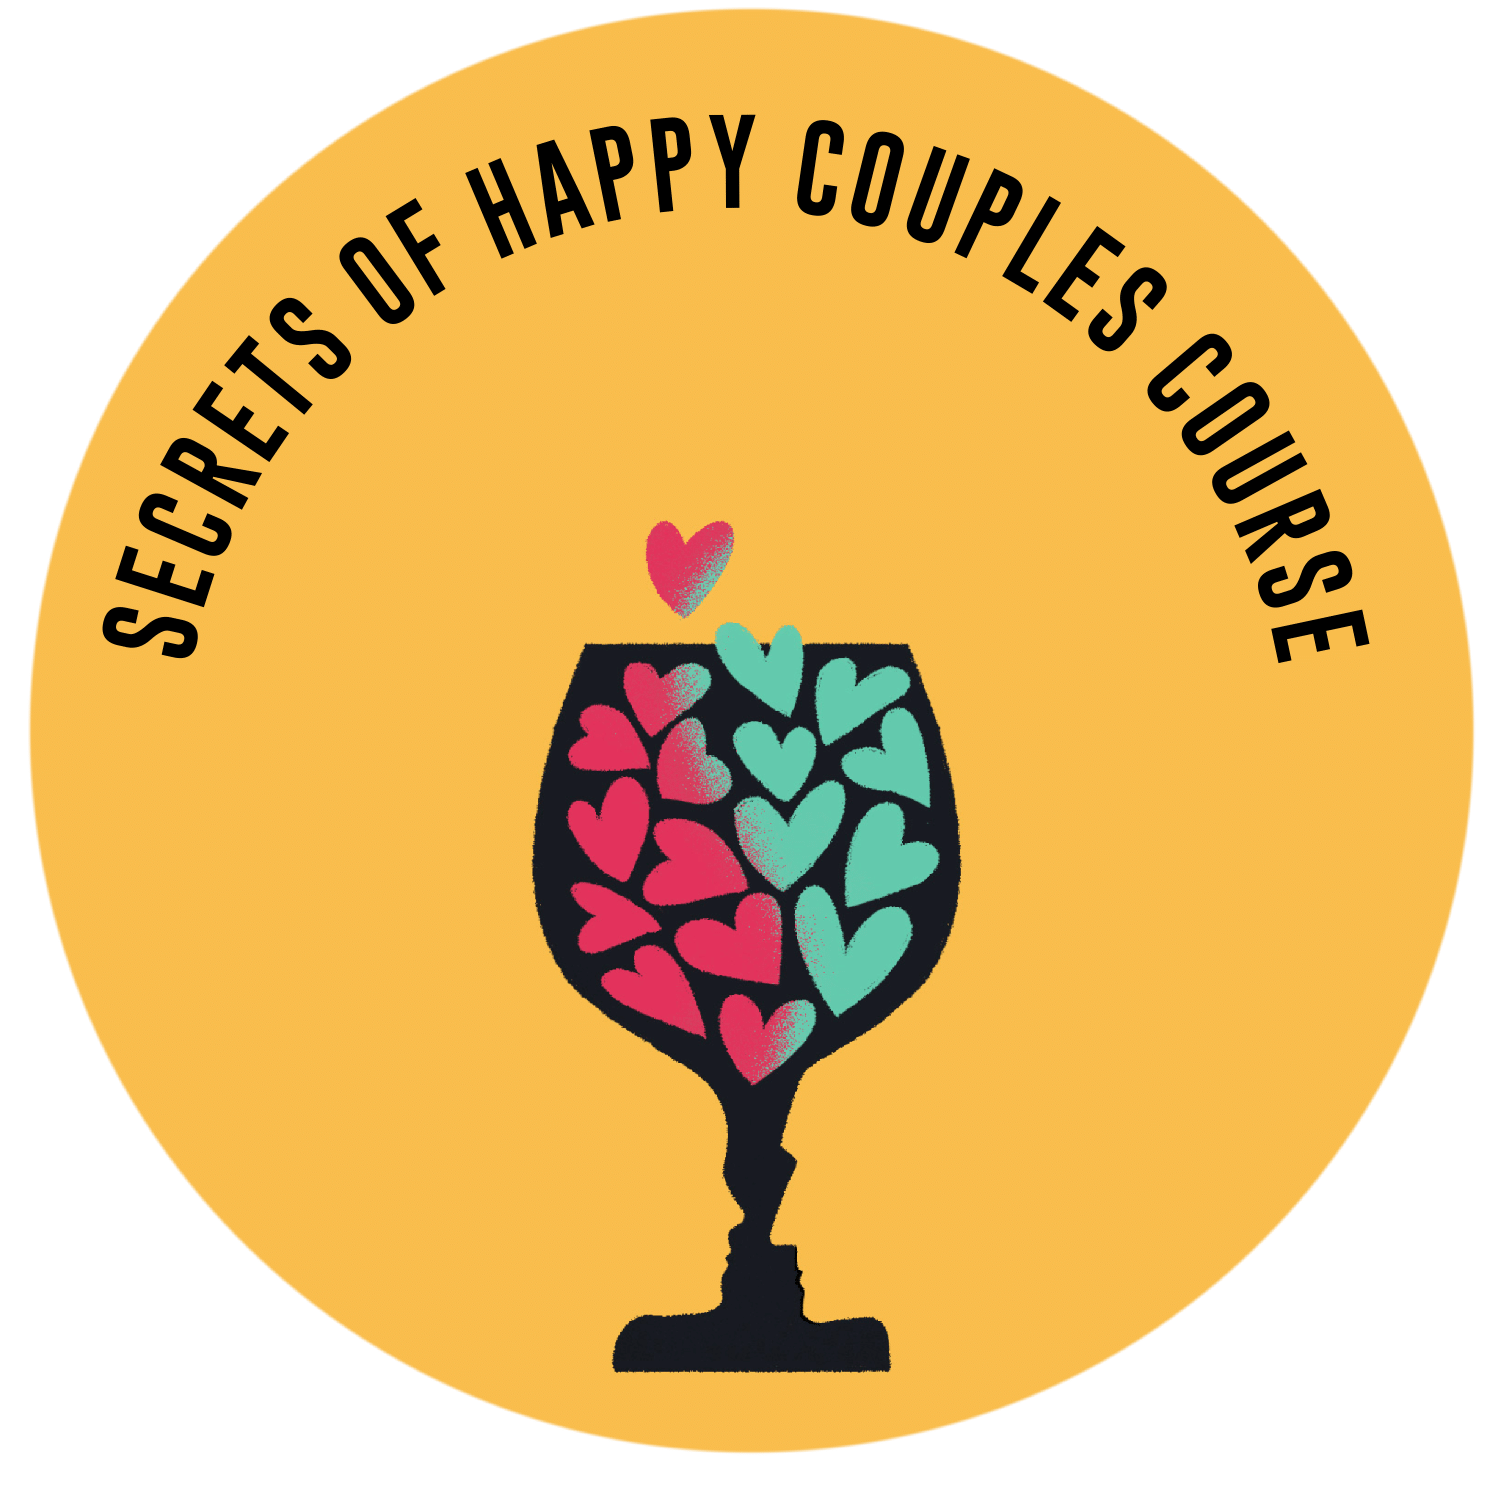 SECRETS OF HAPPY COUPLES